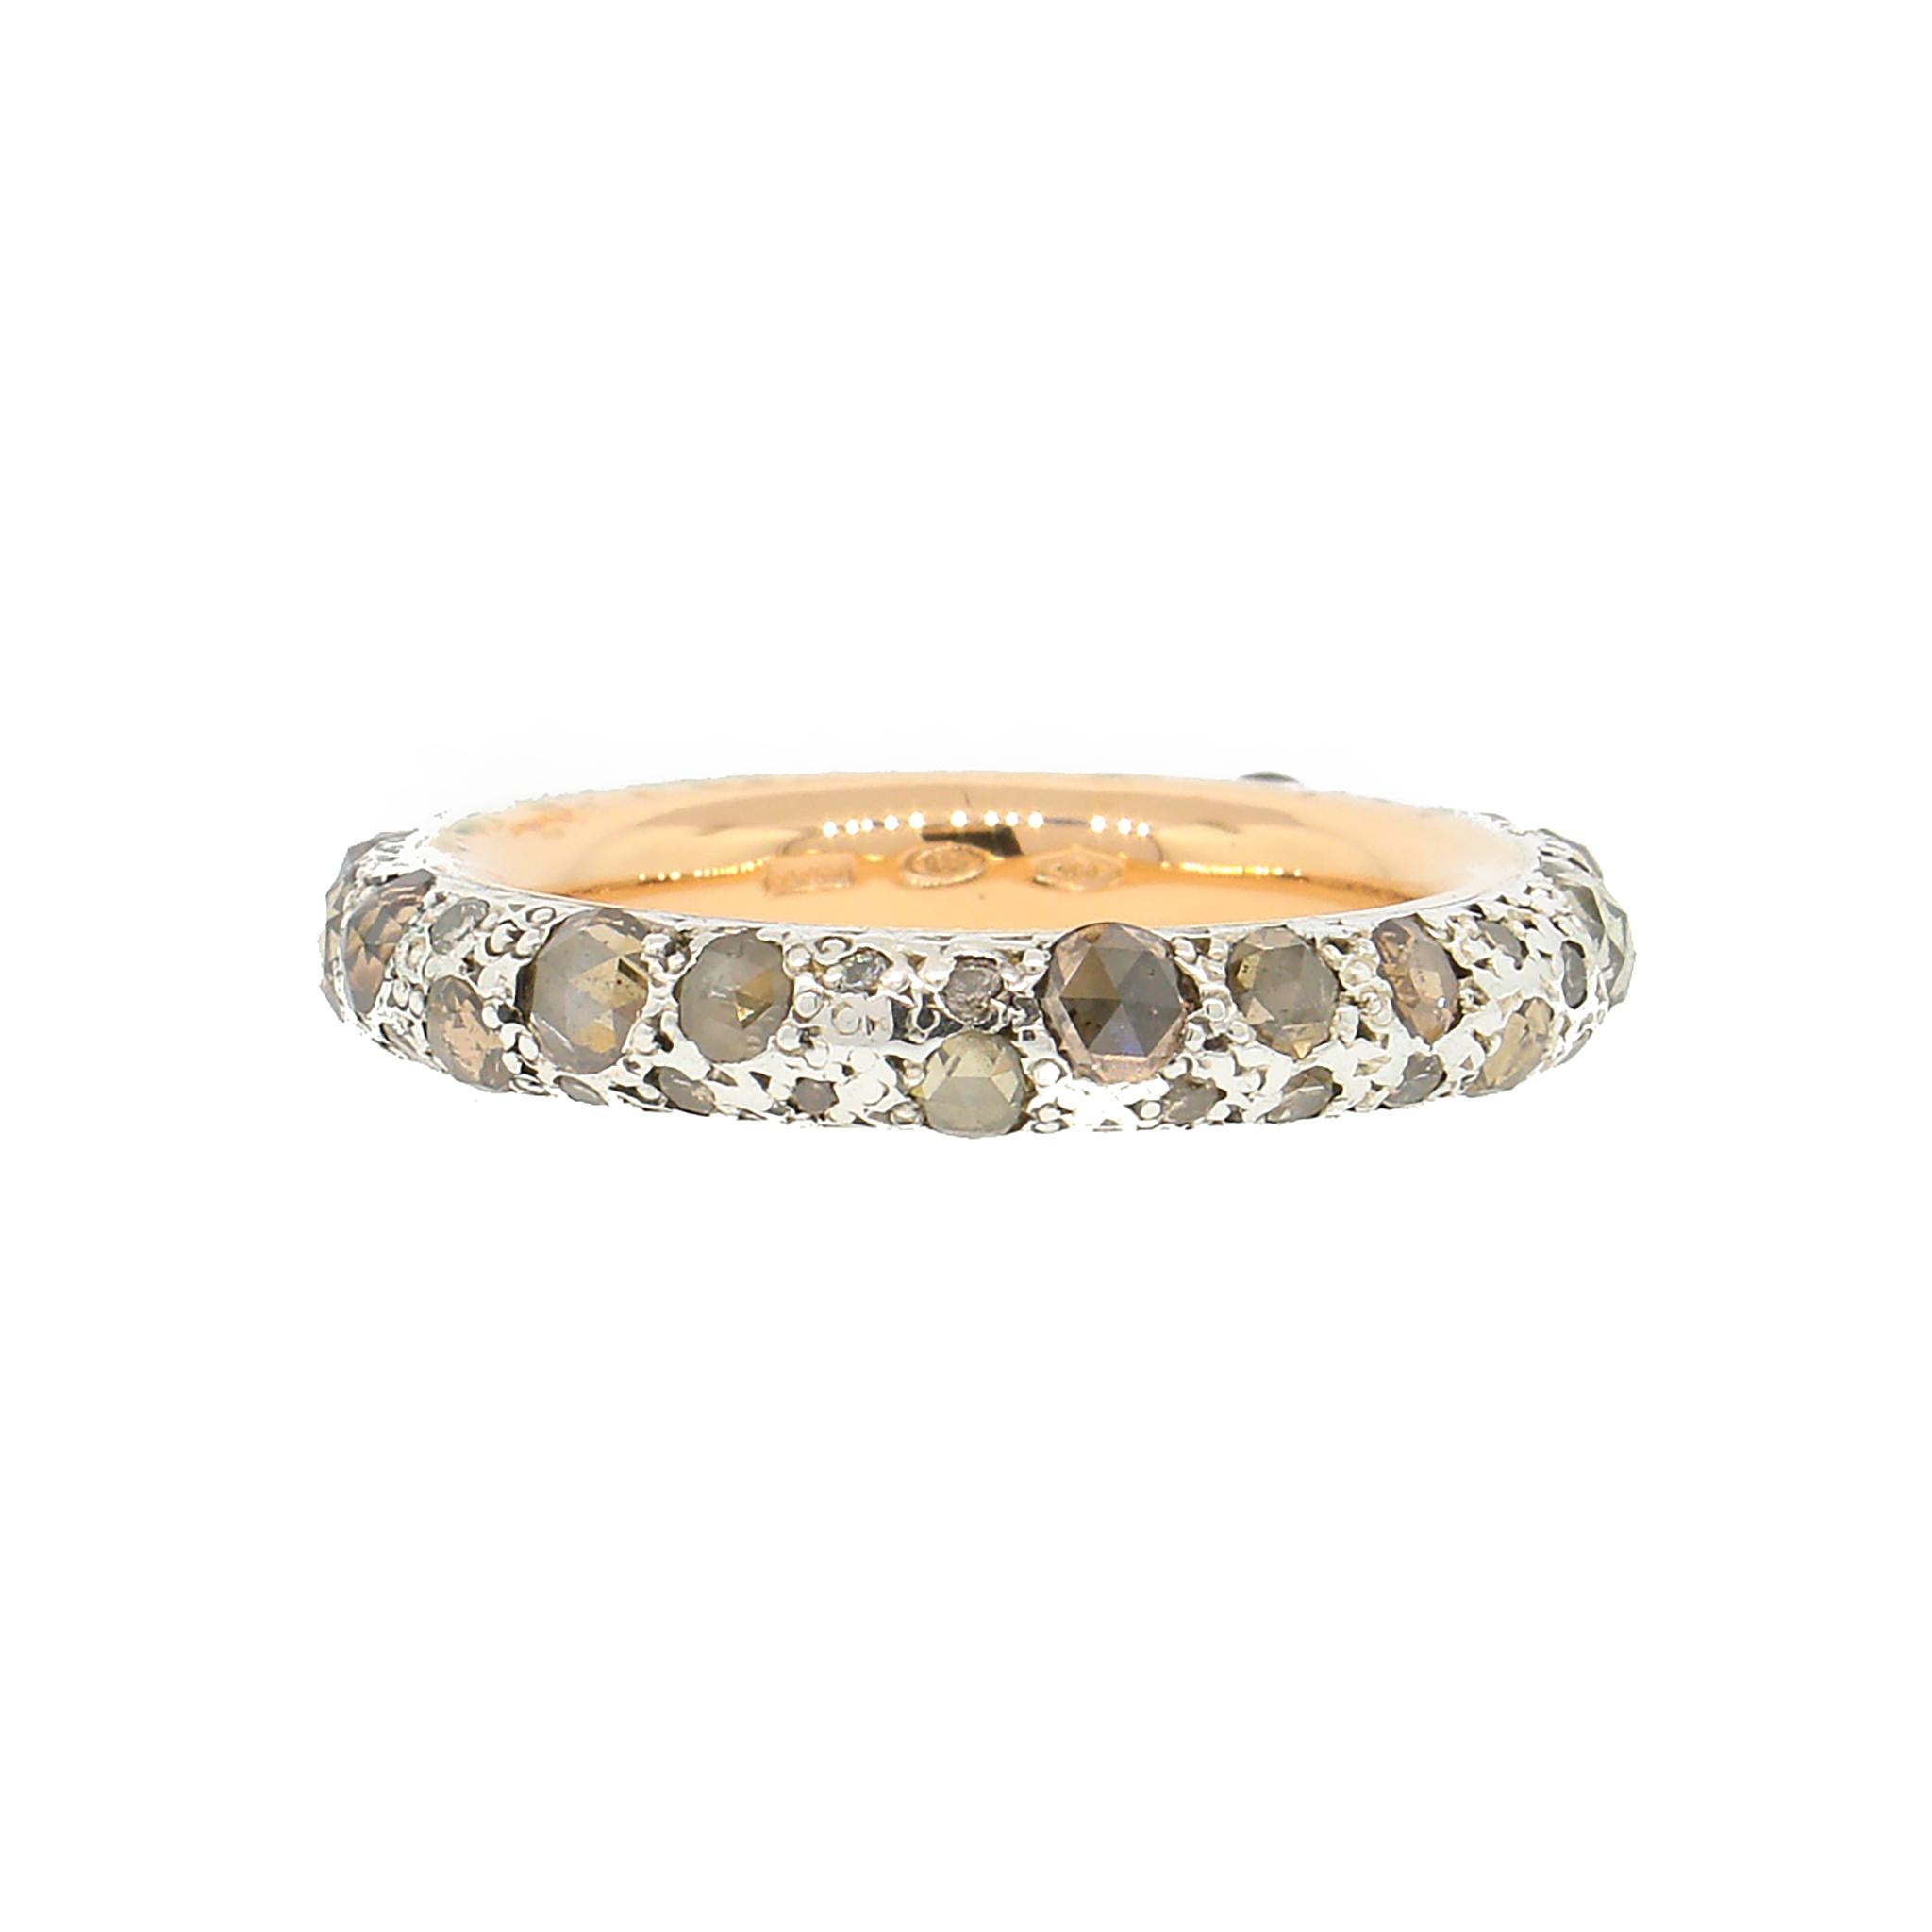 Pomellato Diamond Tango Ring in Two-tone Gold and Silver 1